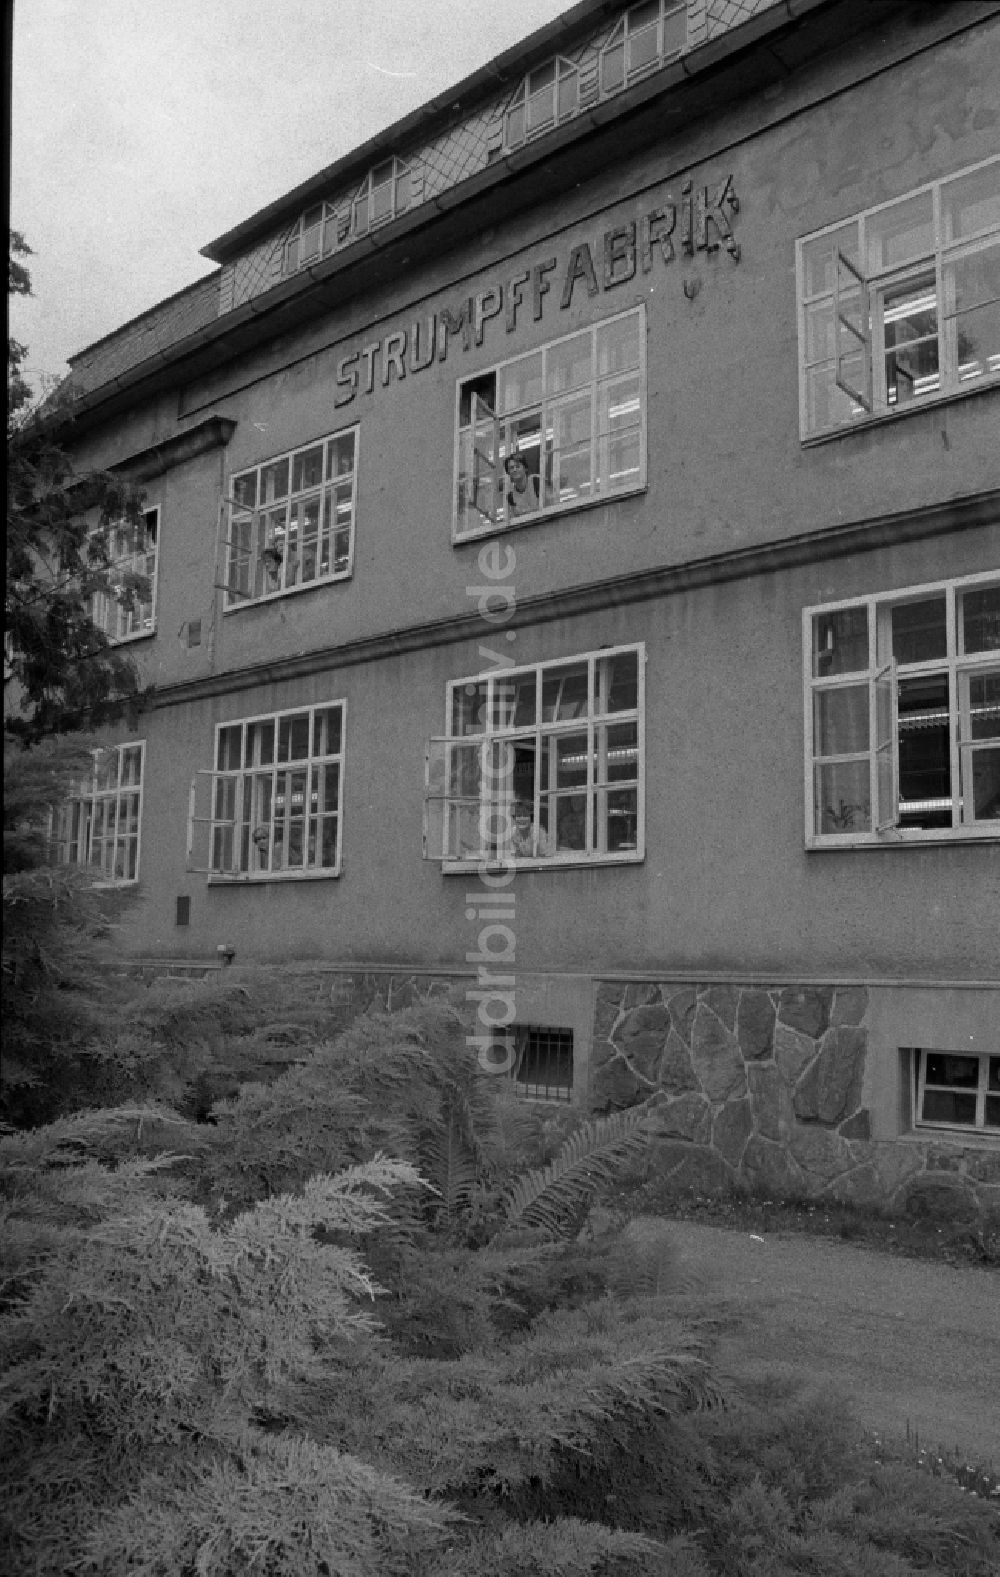 DDR-Fotoarchiv: Thalheim - Herstellung von Damenstrümpfen im VEB Feinstrumpfwerke Esda in Thalheim in Sachsen in der DDR